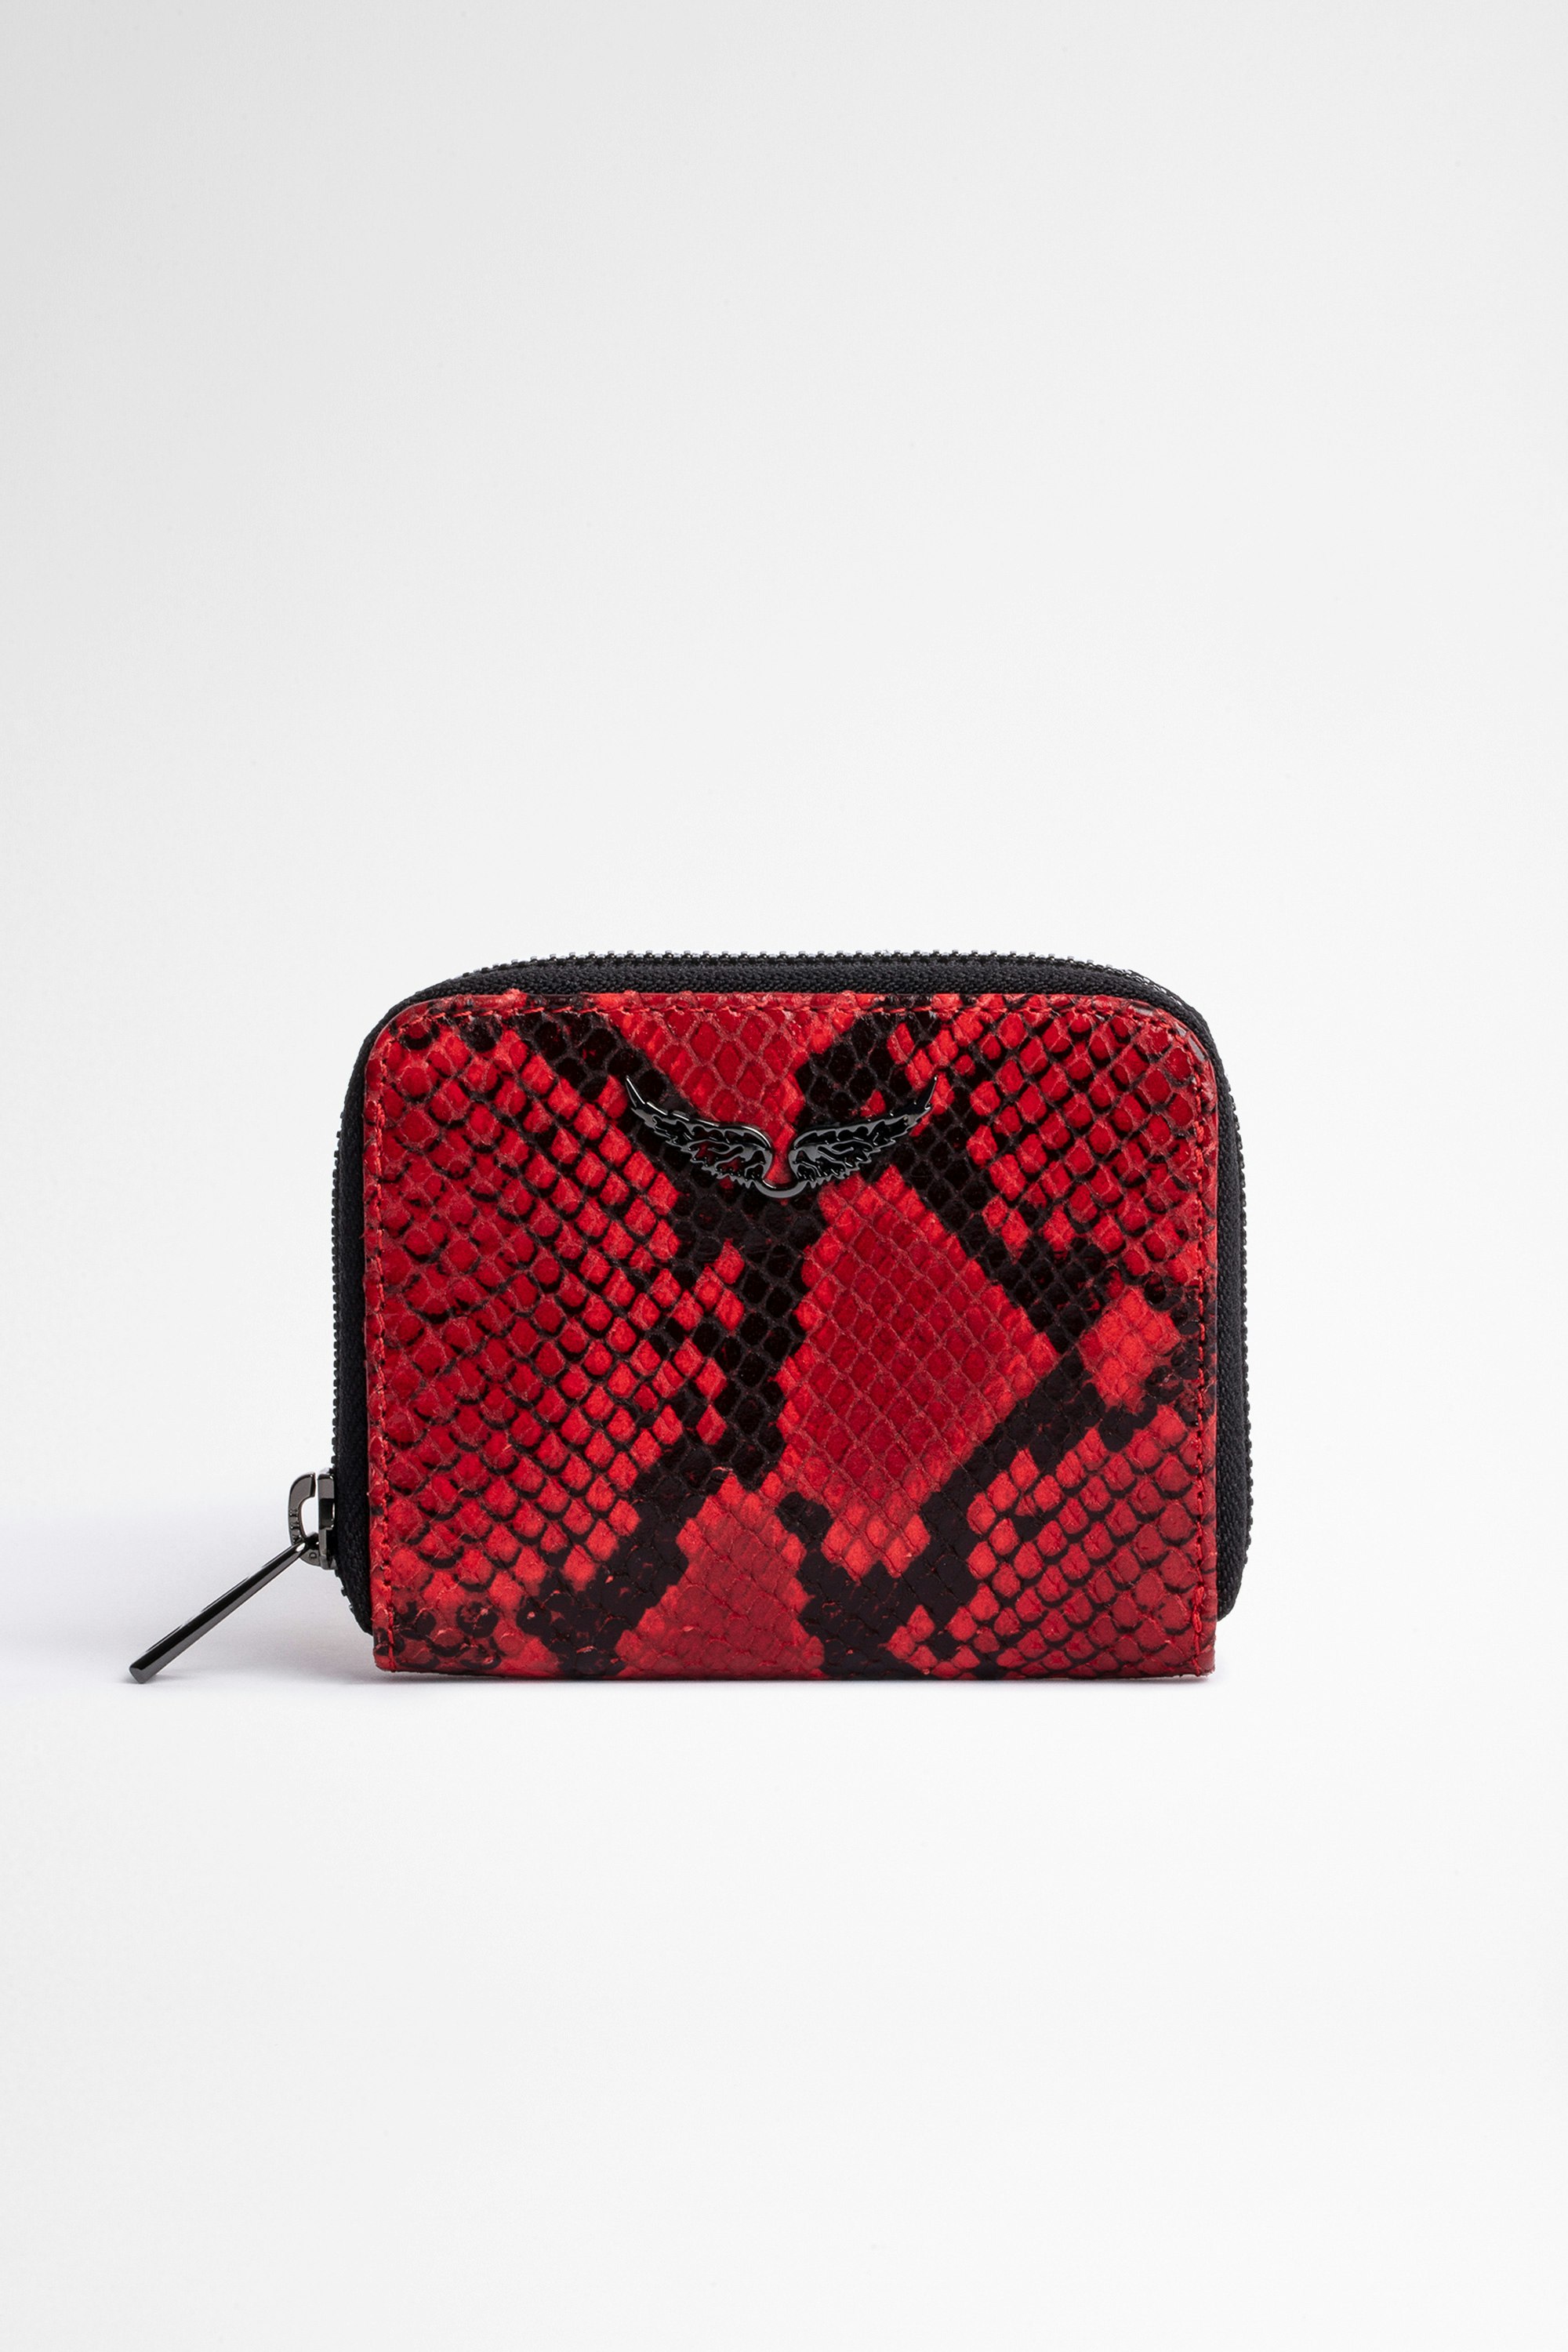 ZV Mini Wallet Women's snakeskin-effect red leather wallet